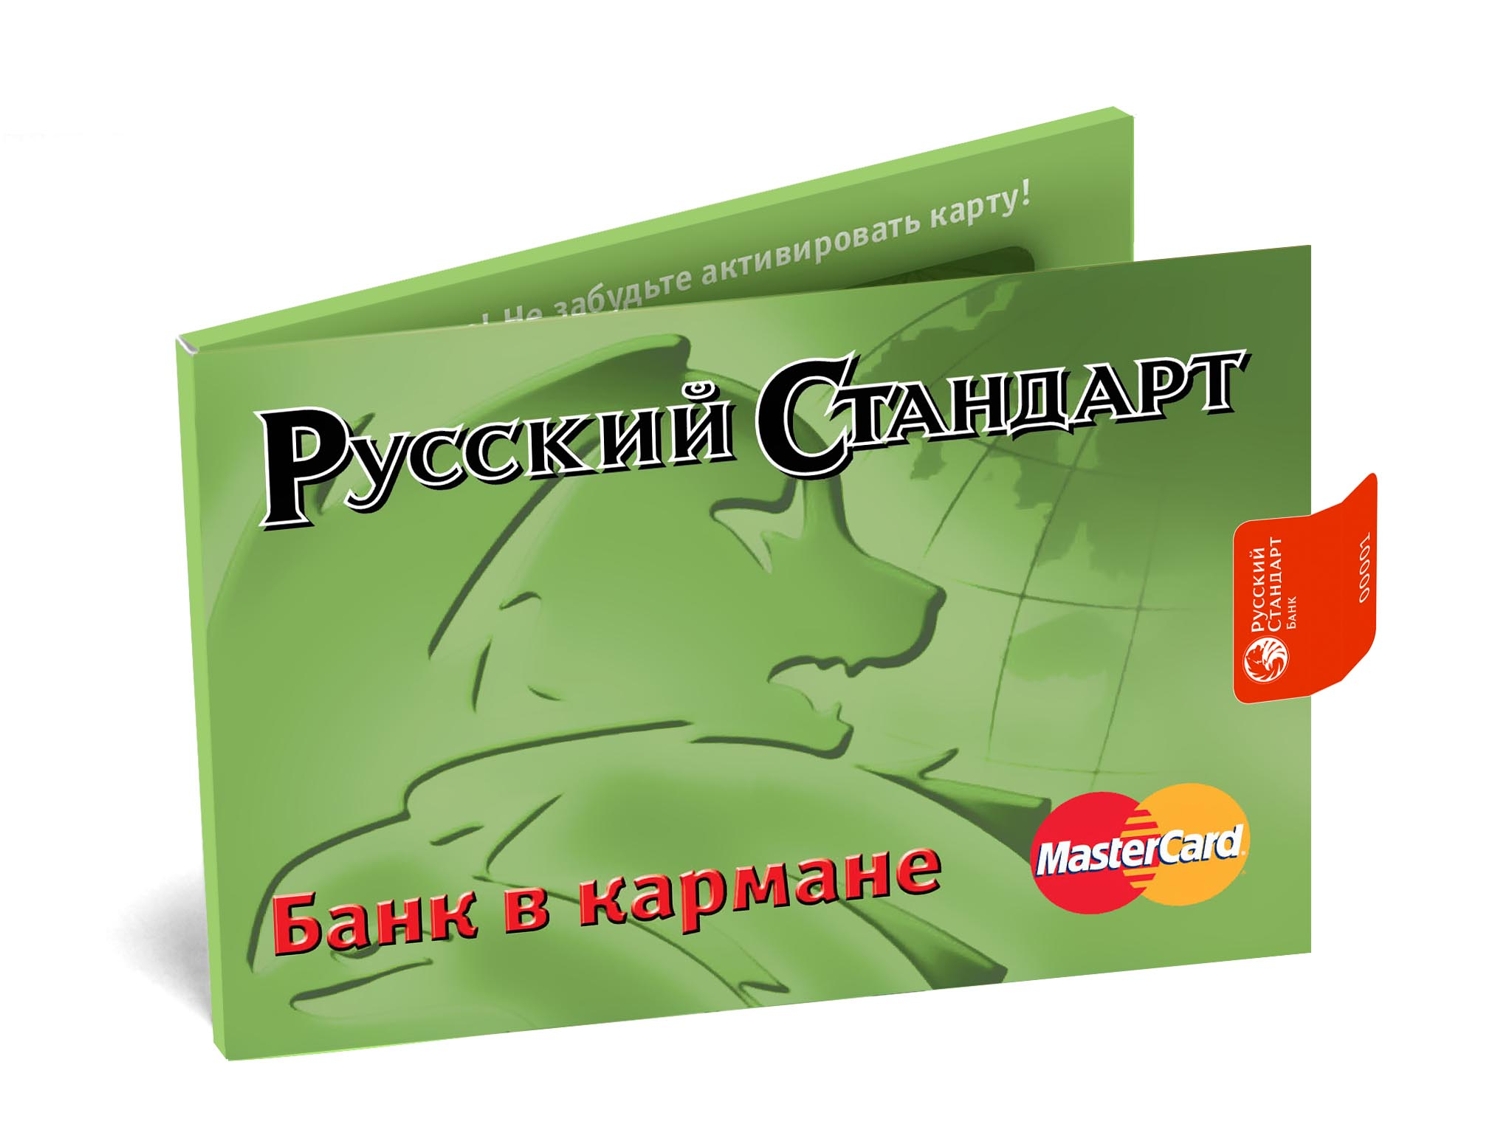 Кредит в банке русский стандарт - Онлайн-кредит: лучшие предложения